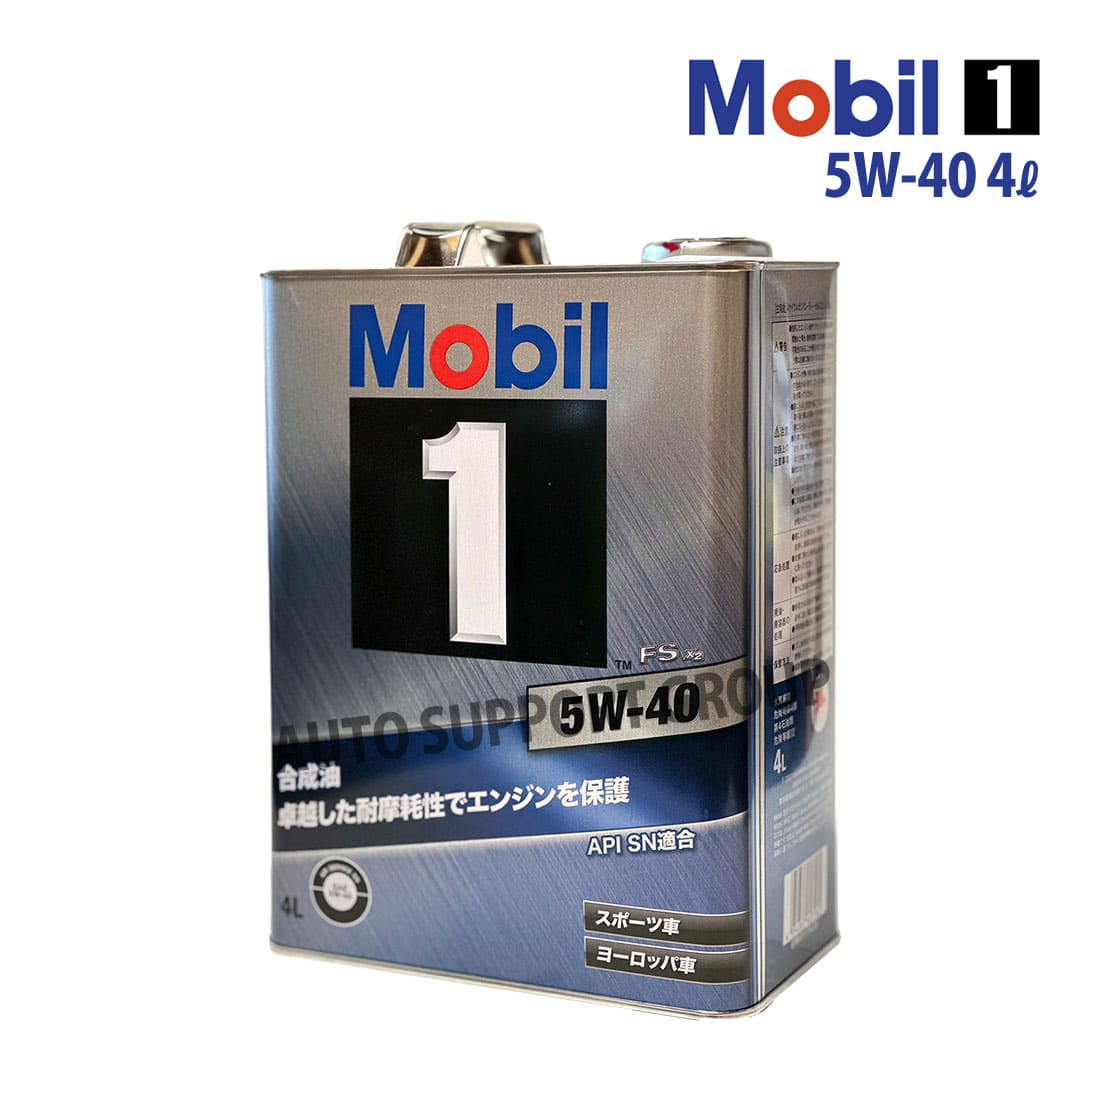 エンジンオイル 5W-40 FS X2 モービル1 Mobil1 4L缶 (4リットル 